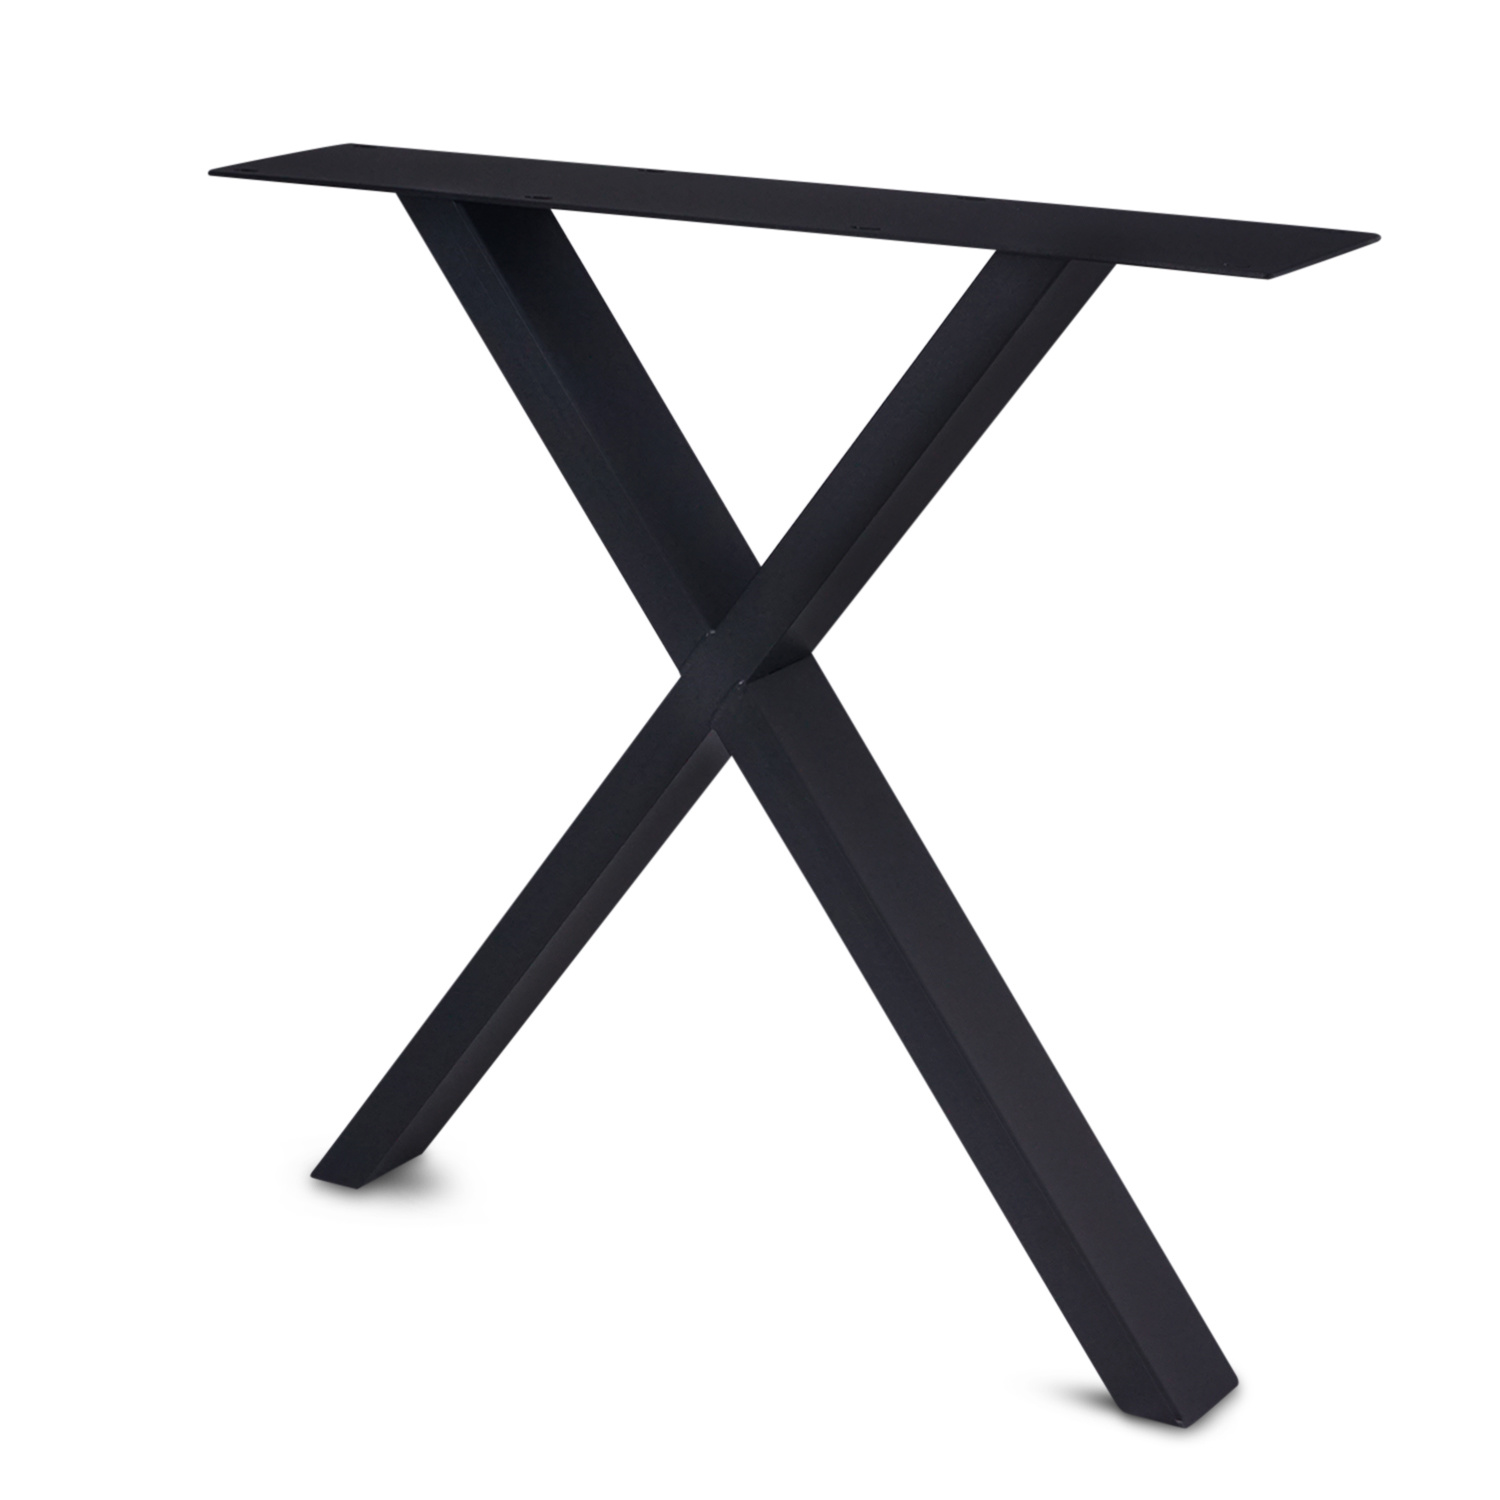  Tischbeine X Metall elegant SET (2 Stück) - 10x4 cm - 77-78 cm breit - 72 cm hoch - X-form Tischkufen / Tischgestell beschichtet - Weiß